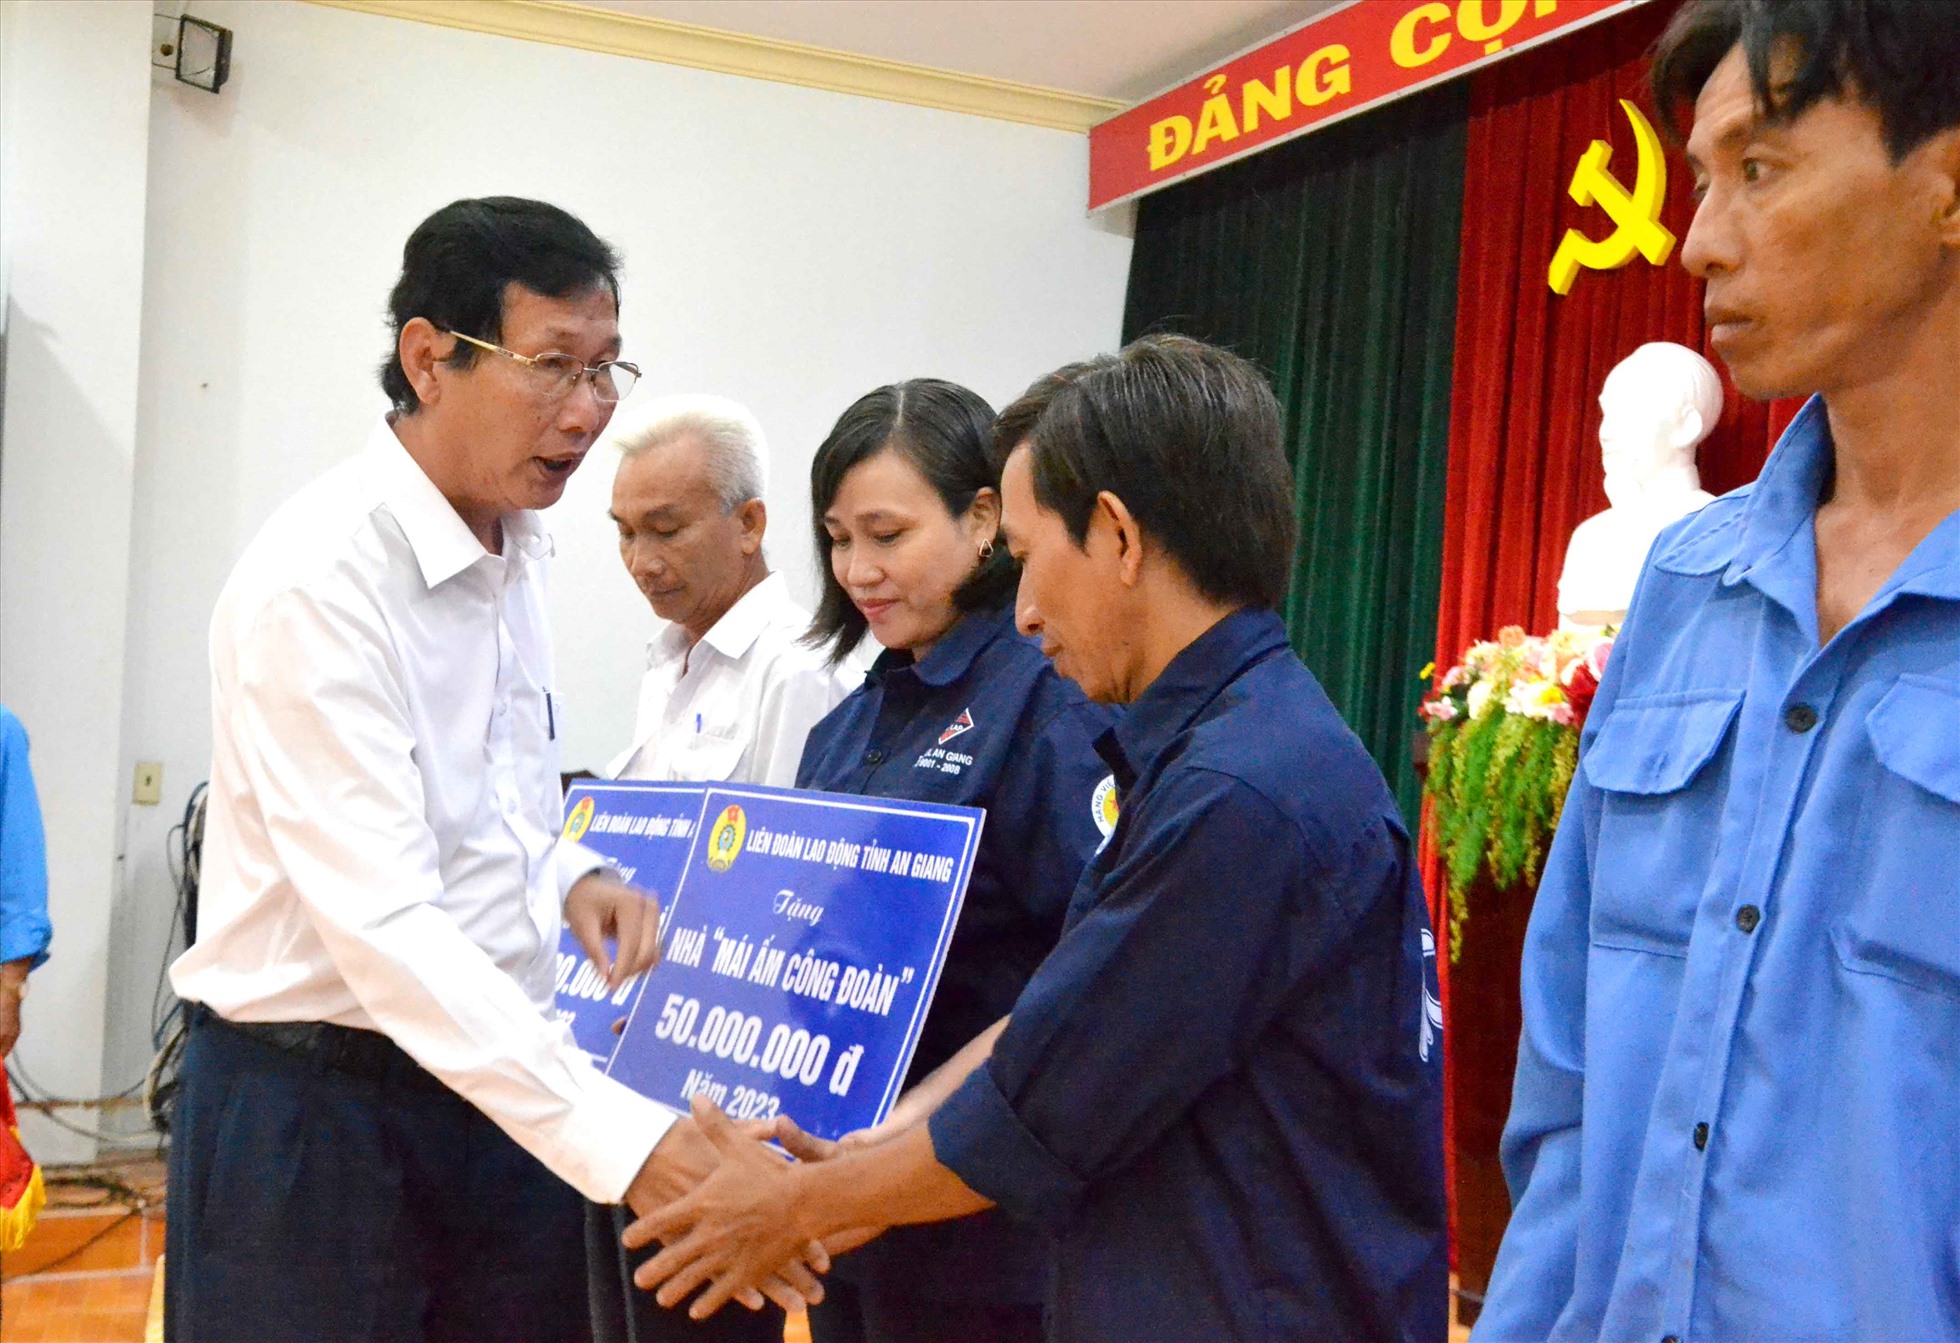 Phó Chủ tịch UBND tỉnh An Giang Lê Văn Phước tặng Mái ấm Công đoàn cho đoàn viên khó khăn nhà ở. Ảnh: Lâm Điền